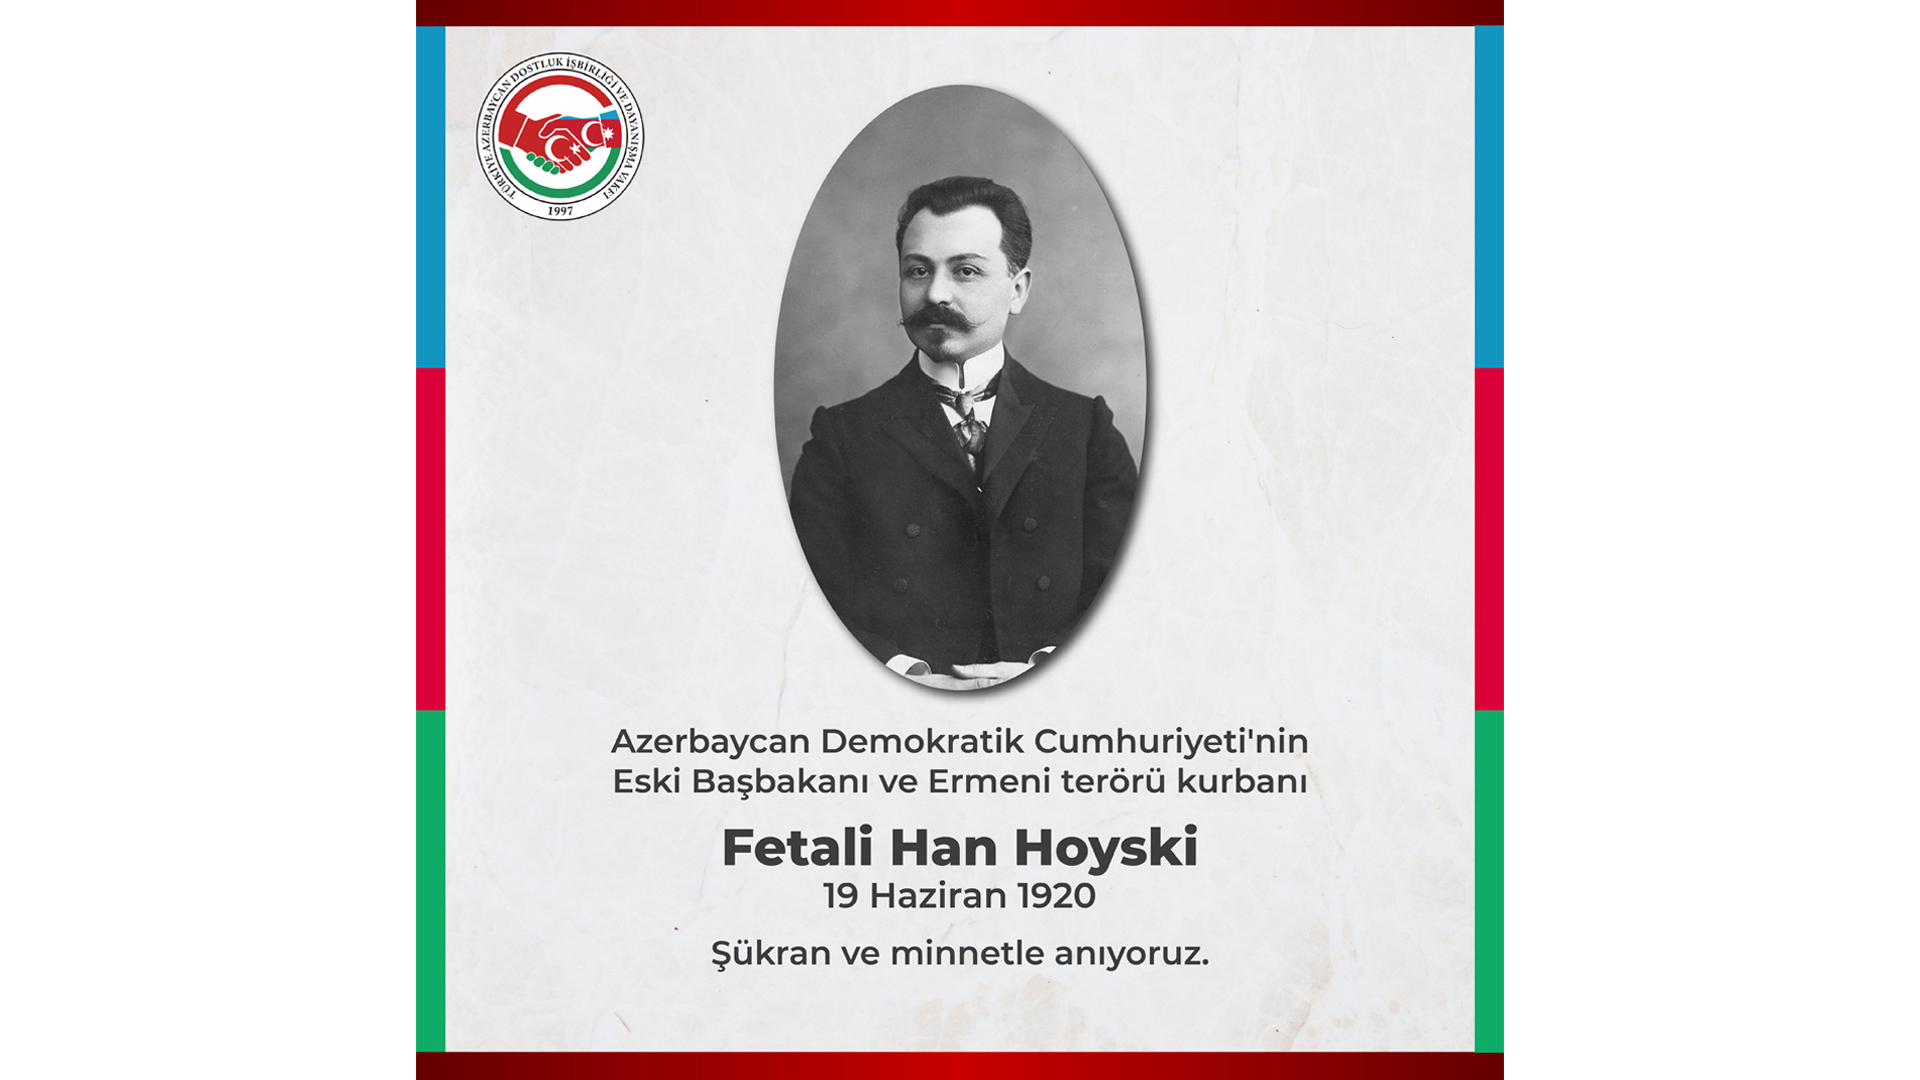 Fetali Han Hoyski (19 Haziran 1920), Nemesis’ten PKK’ya Türkiye‘nin terörle mücadelesi ve Pençe Kartal Operasyonu